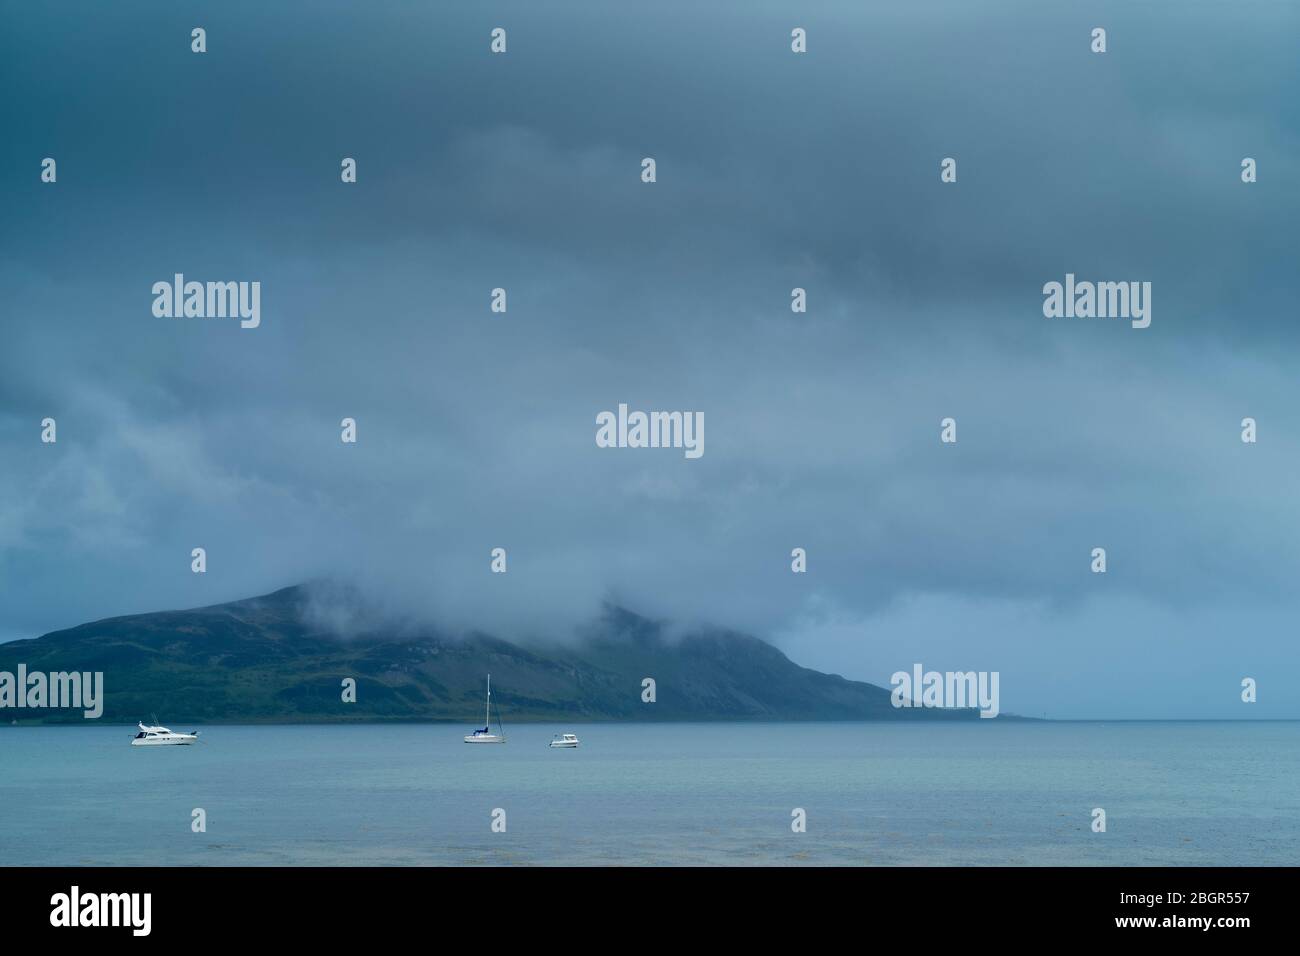 Scène gris Misty - bateaux de plaisance, yachts et croiseurs amarrés dans la baie de Laflash sur l'île d'Arran, Ecosse Banque D'Images